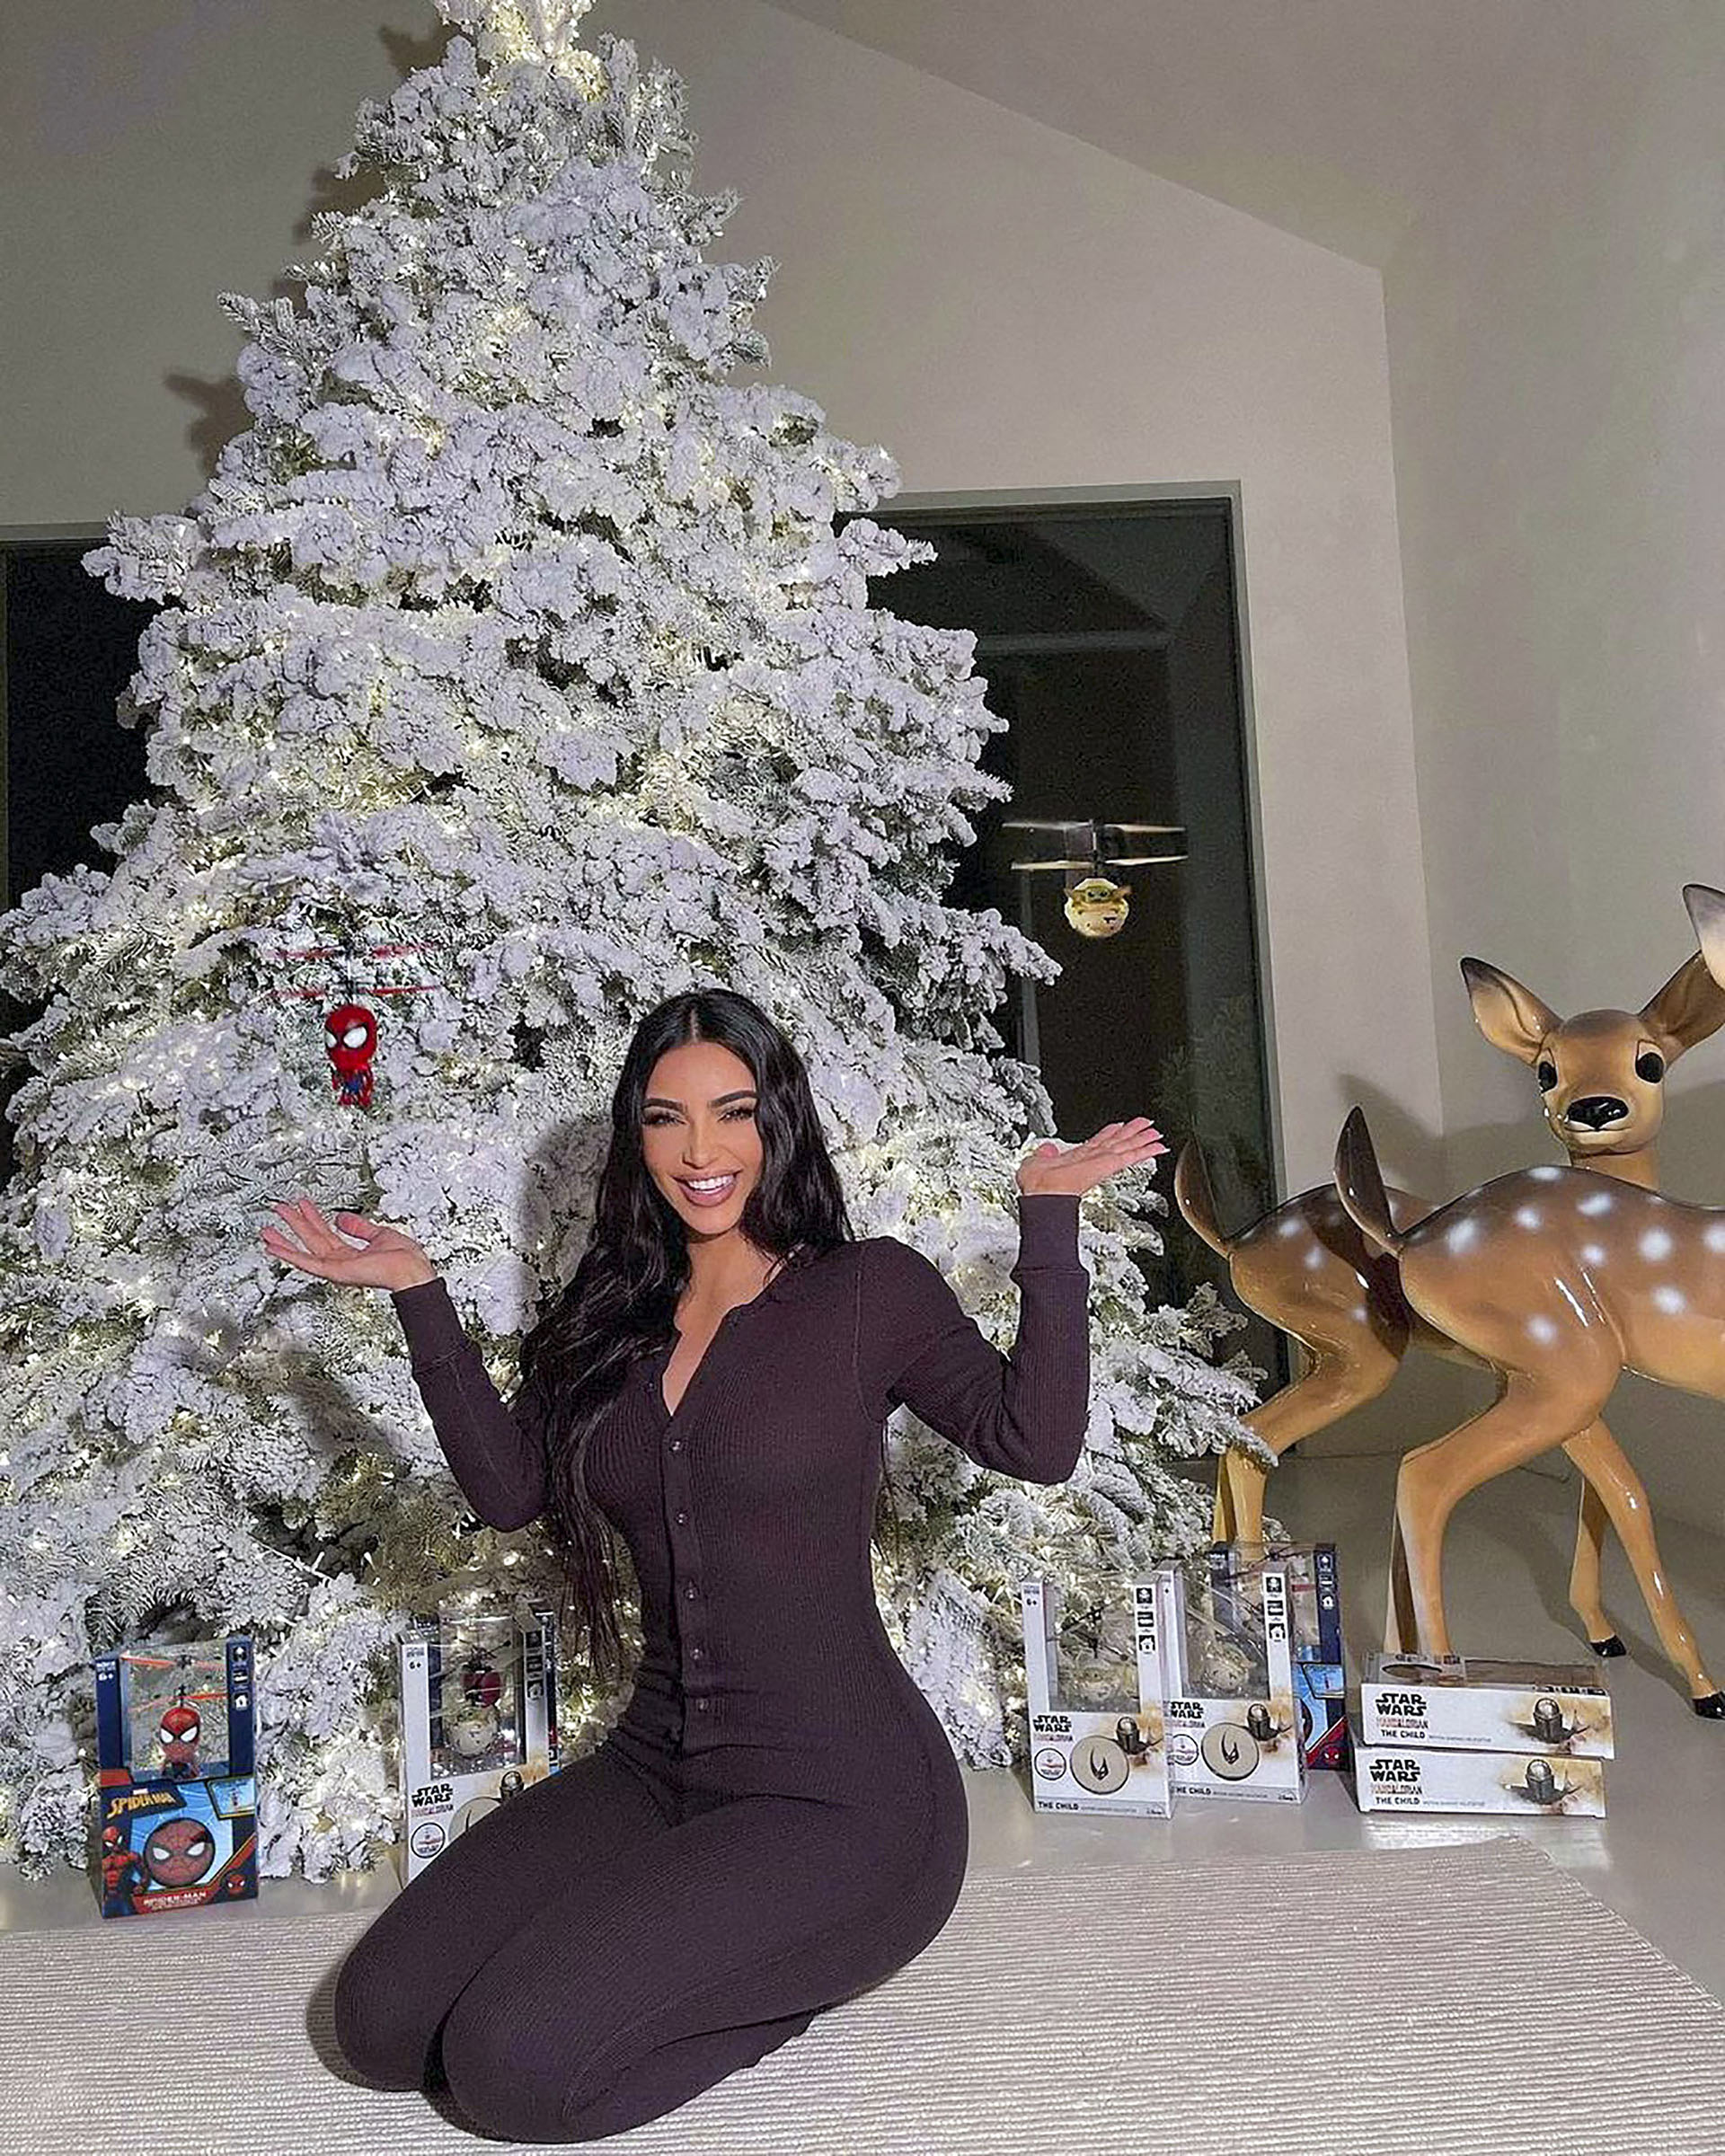 Kim y Kourtney Kardashian posaron junto a un árbol navideño gigante y ofrecieron consejos a otros padres sobre cómo comprar los regalos sin salir de casa